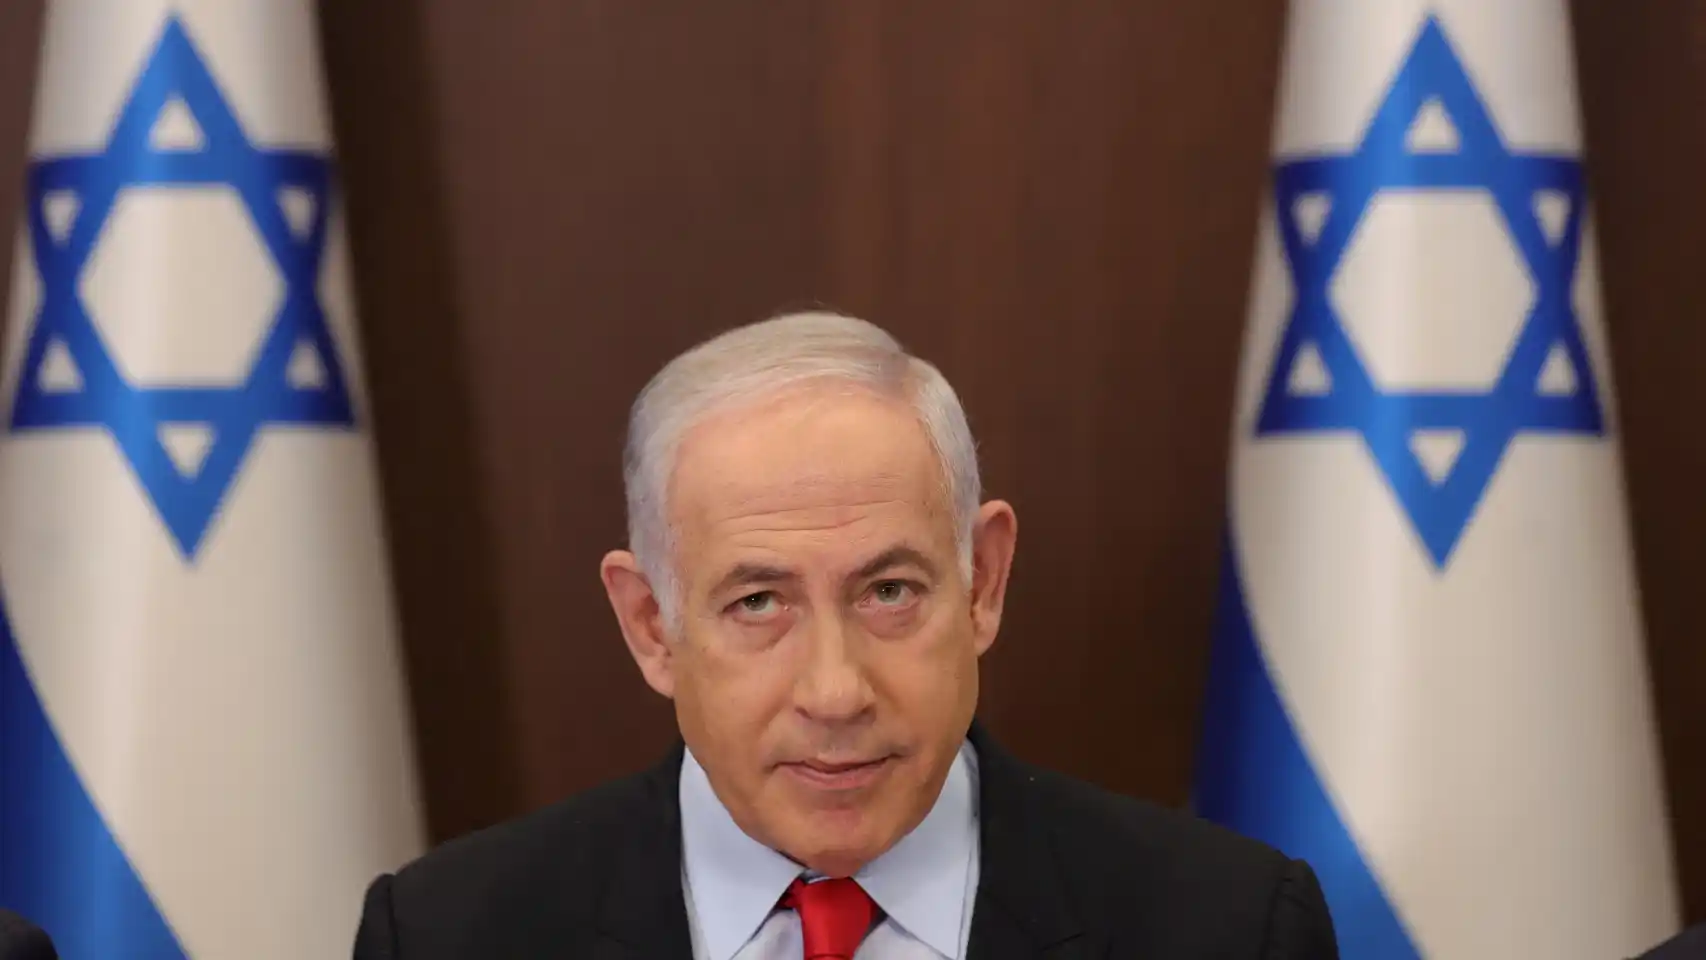 Benjamín Netanyahu, ultranacionalista, unido con los sionistas extremistas de israel. Defender a Petro y condenar a Hamás y al genocidio sionista